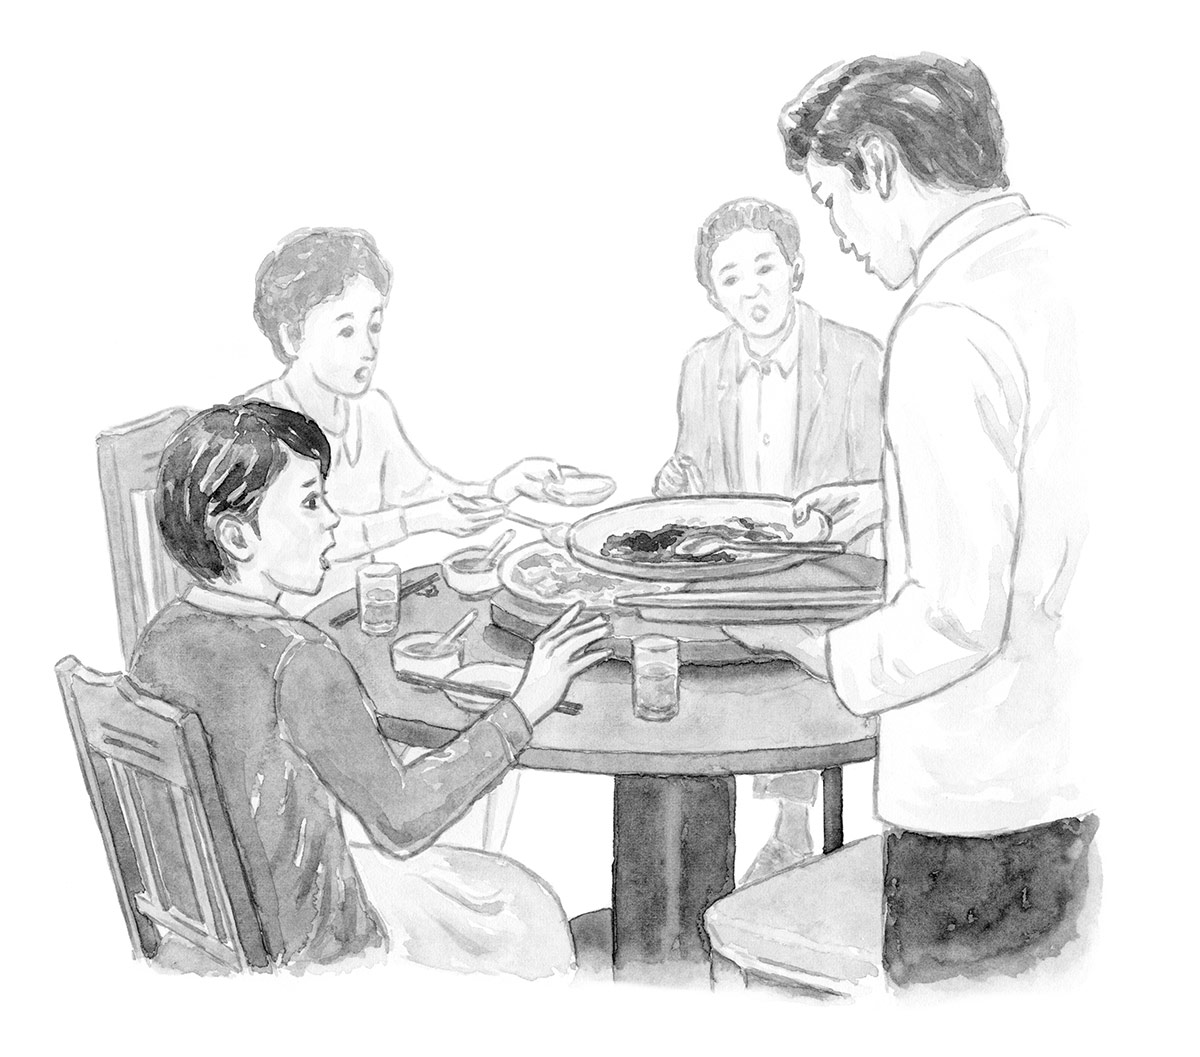 1960s　増刷通知が来ると中華の円卓を家族で囲んだ。

家族では中華料理屋や寿司屋によく行った。わがままを言える人とおいしいものを食べるのが、父の一番のごちそうだった。思い通りにならないと不機嫌に……。